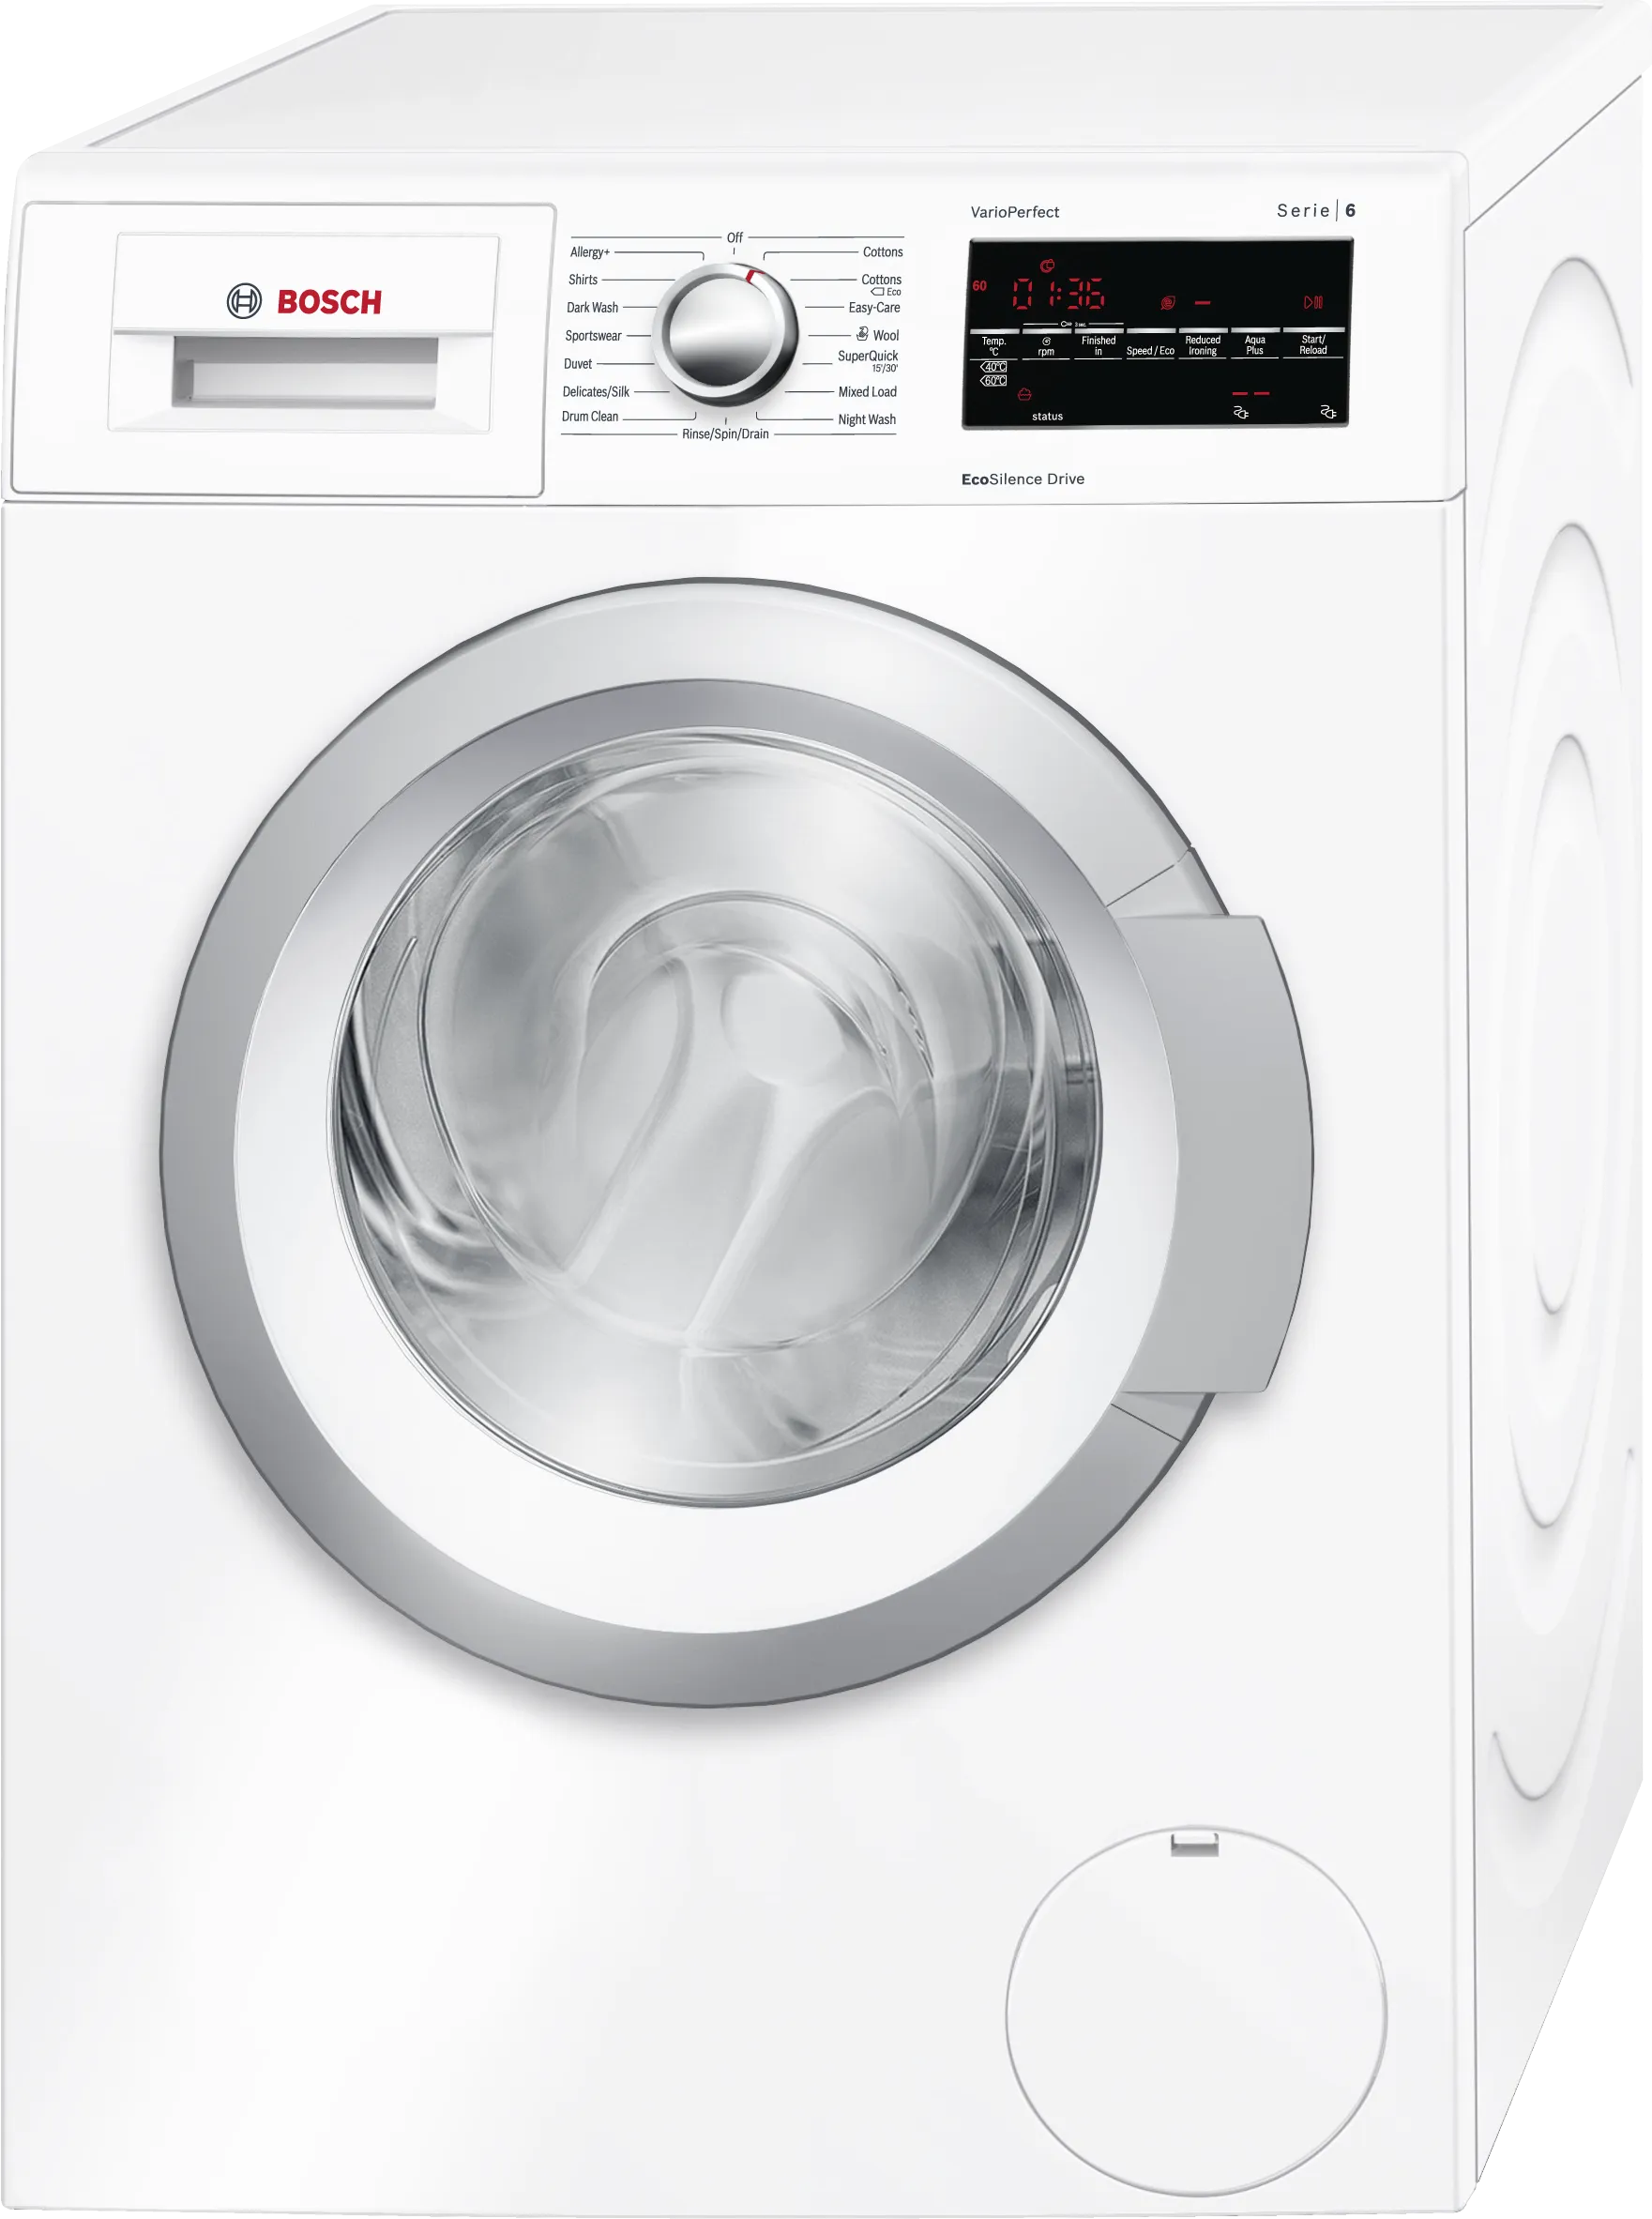 Series 6 Washing machine, front loader 8 kg 1400 rpm 